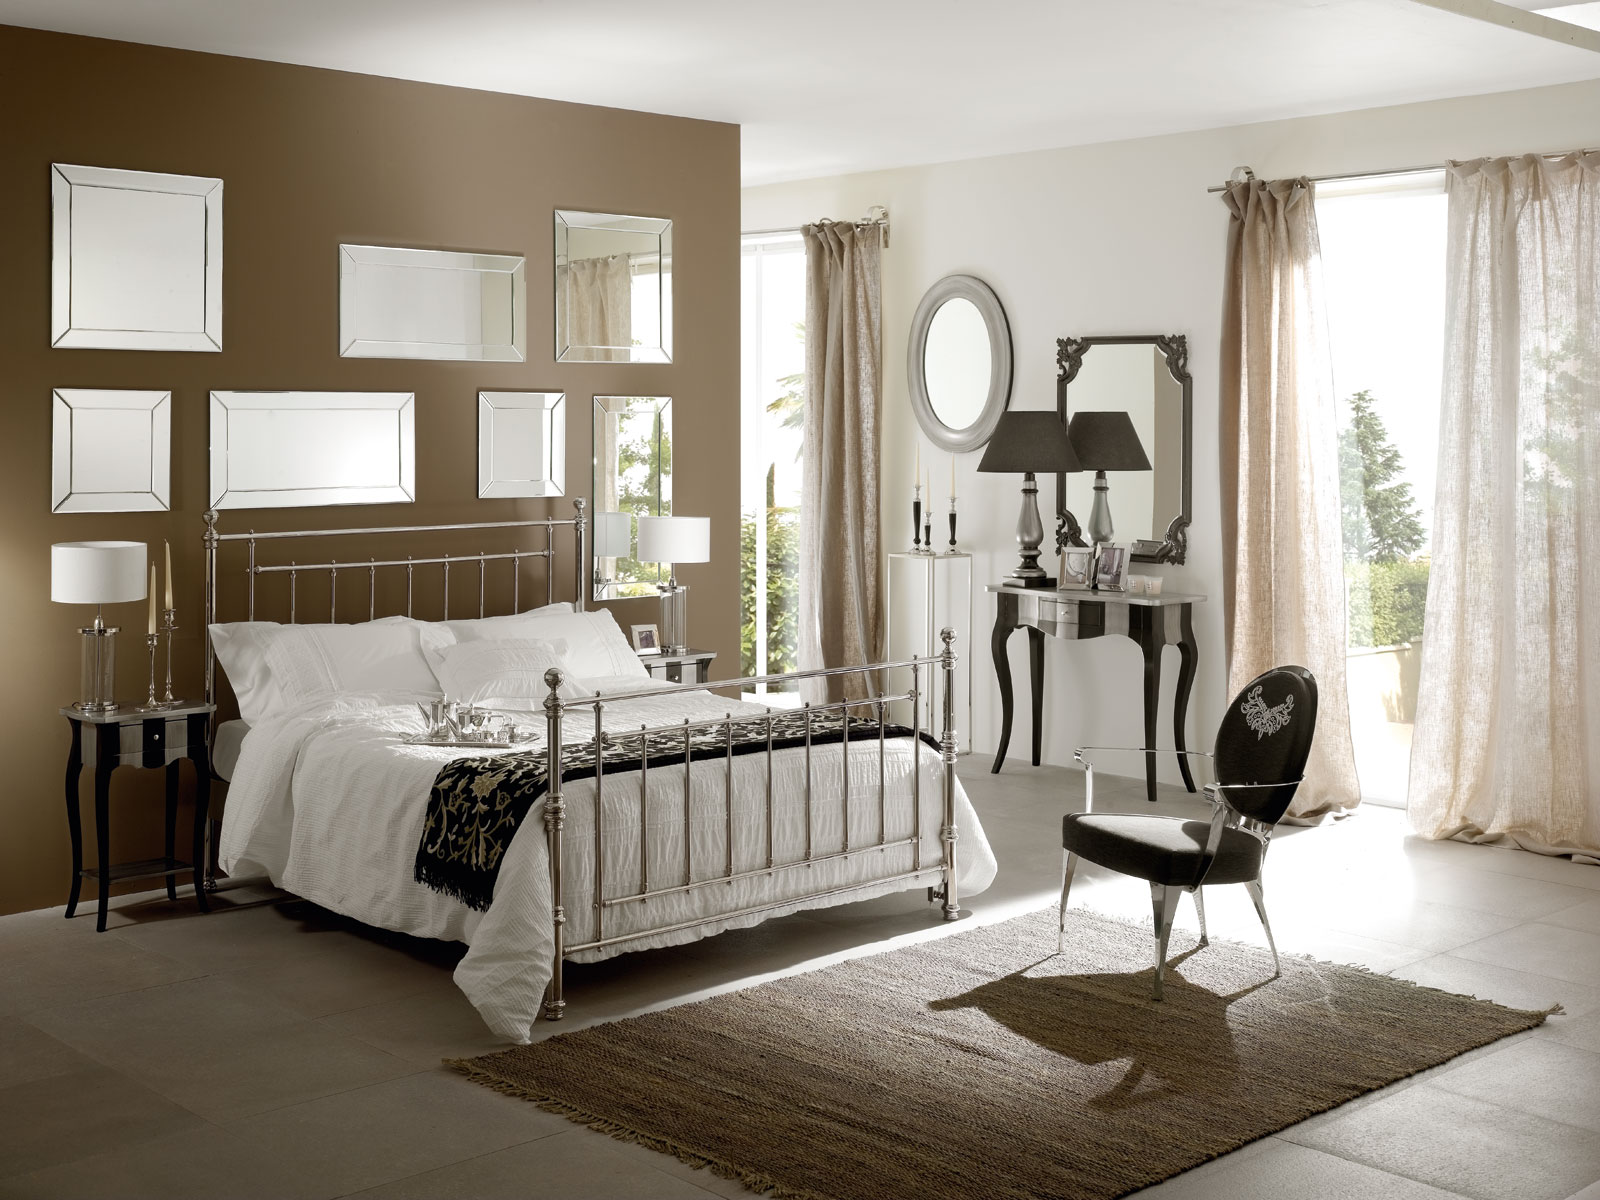 brun-accent-de-couleur-mur-schéma-de-moderne-chambre-d'adolescent-design-avec-miroir-mural-décoratif-sur-métal-cadre-de-lit-et-cool-noir-tissu-fauteuil-sur- moquette-marron